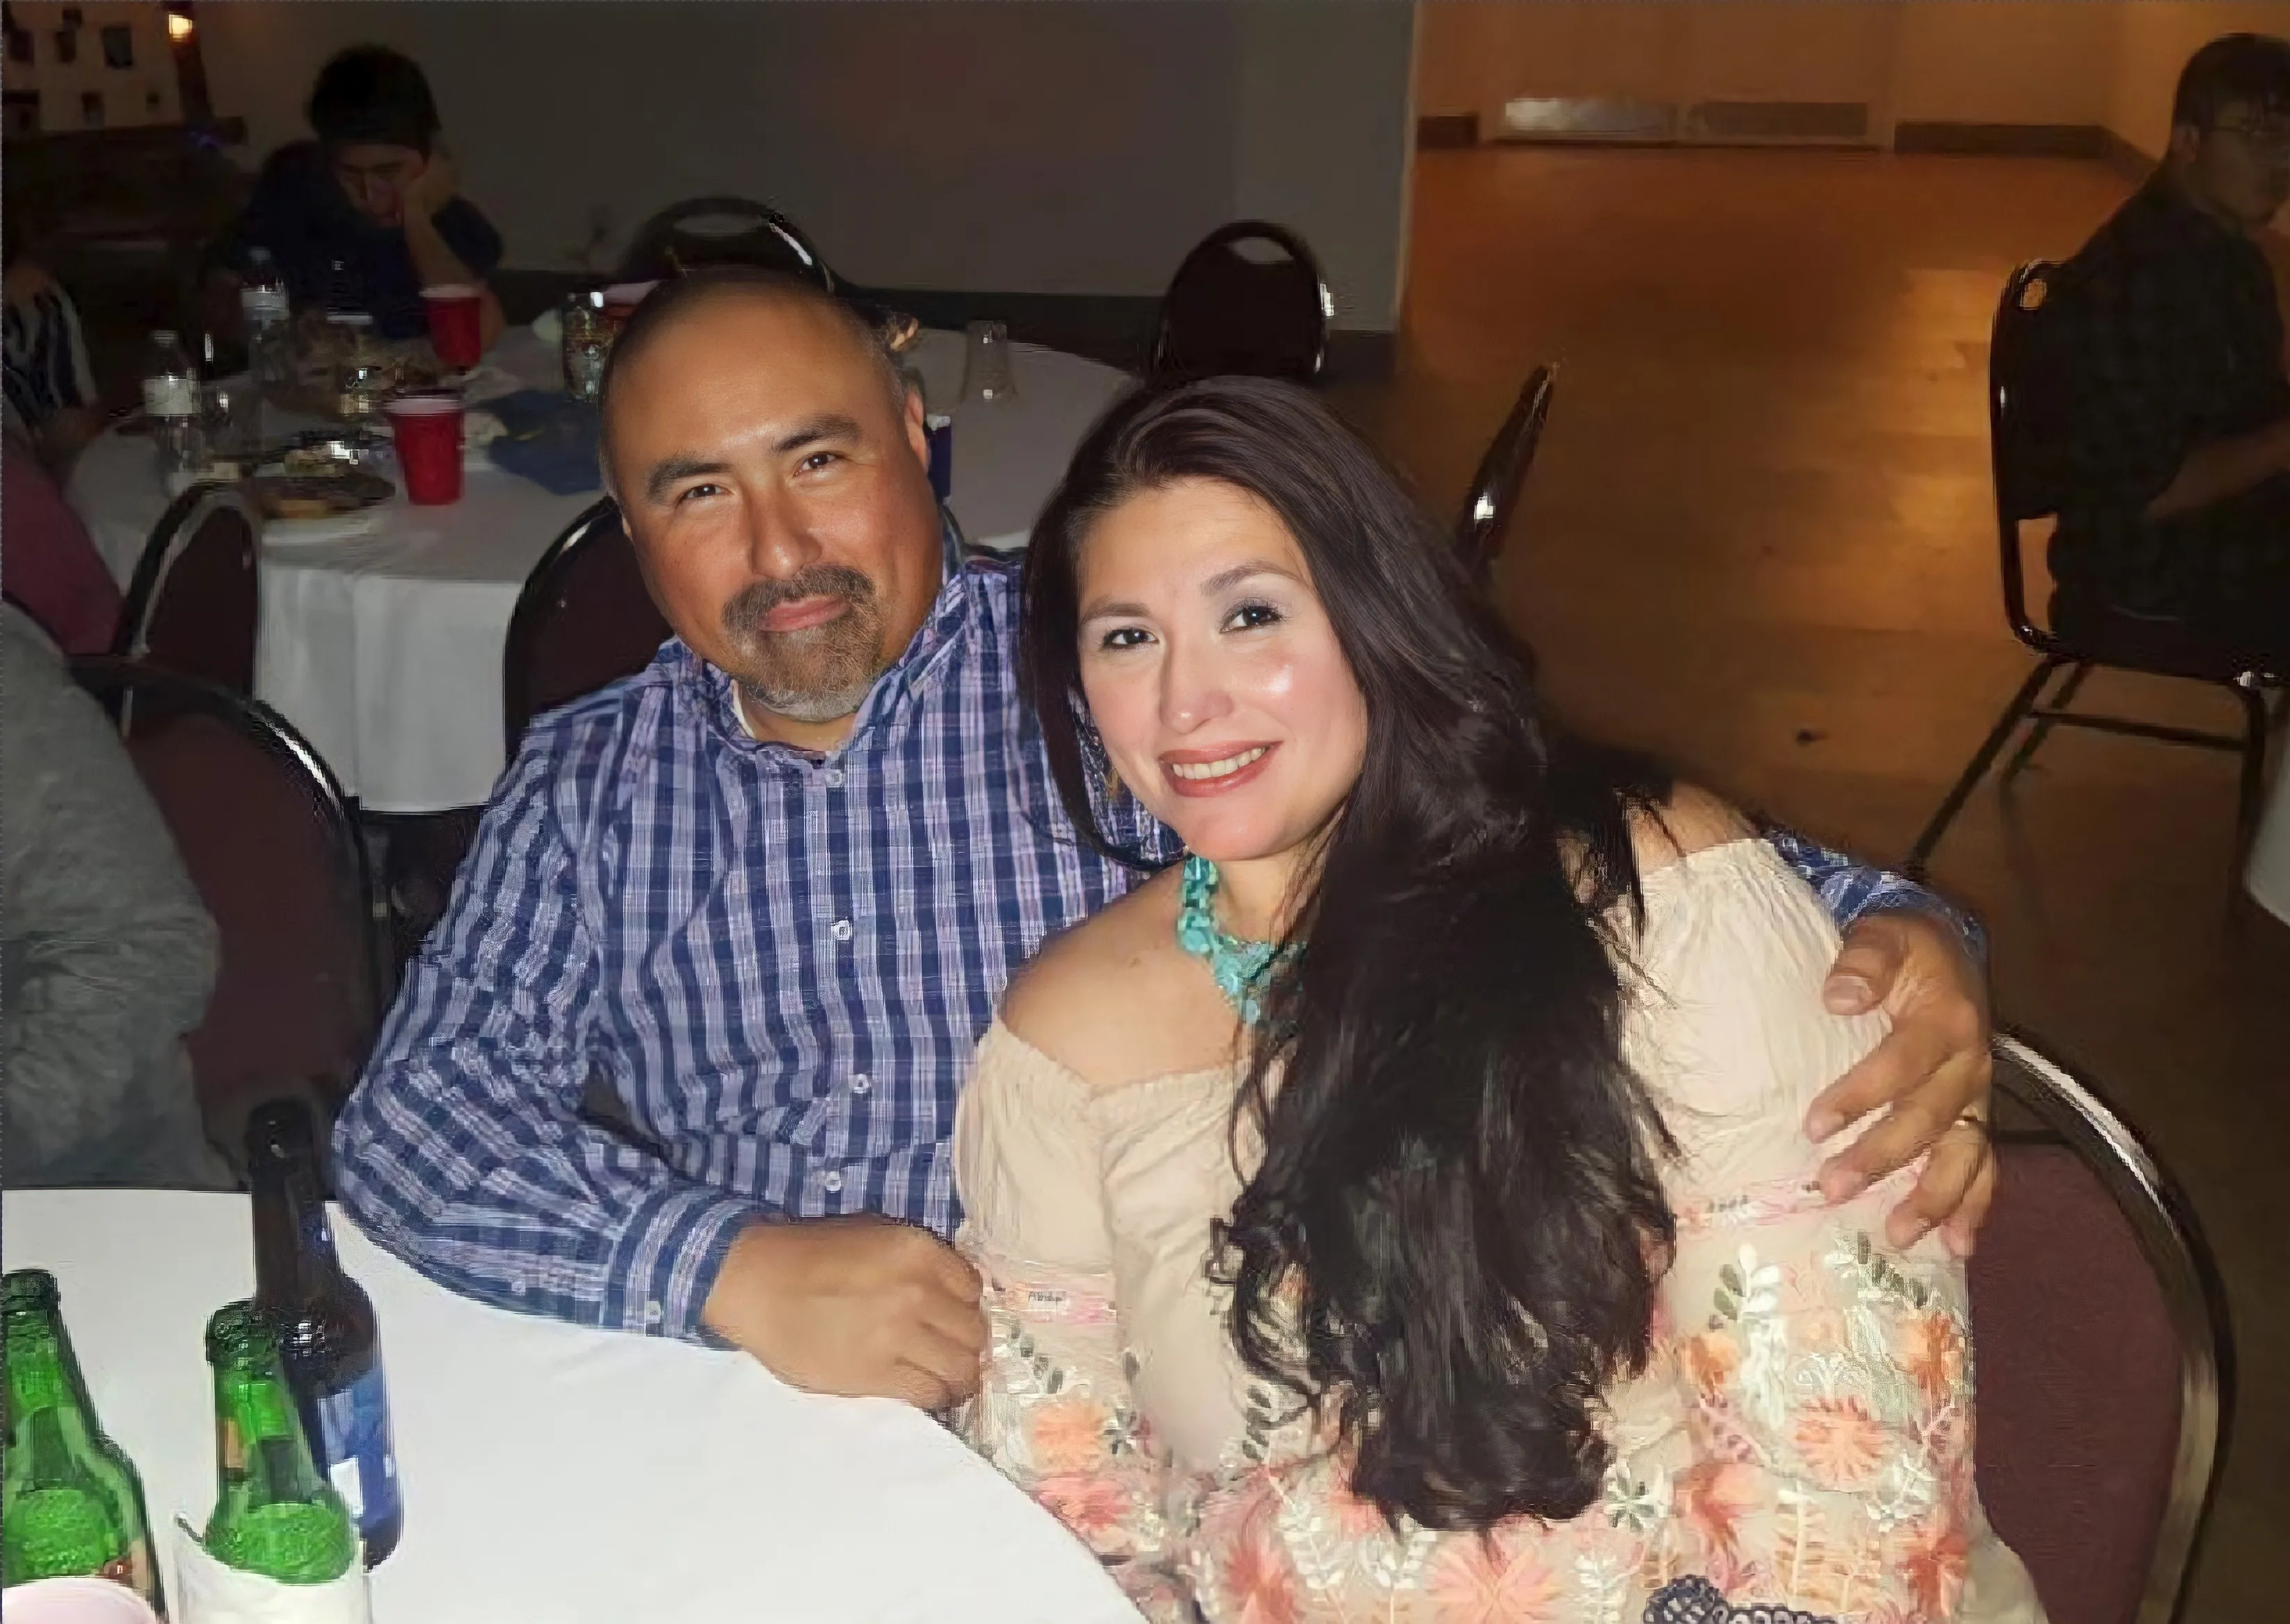 Muere de un infarto el marido de profesora asesinada en tiroteo en Texas